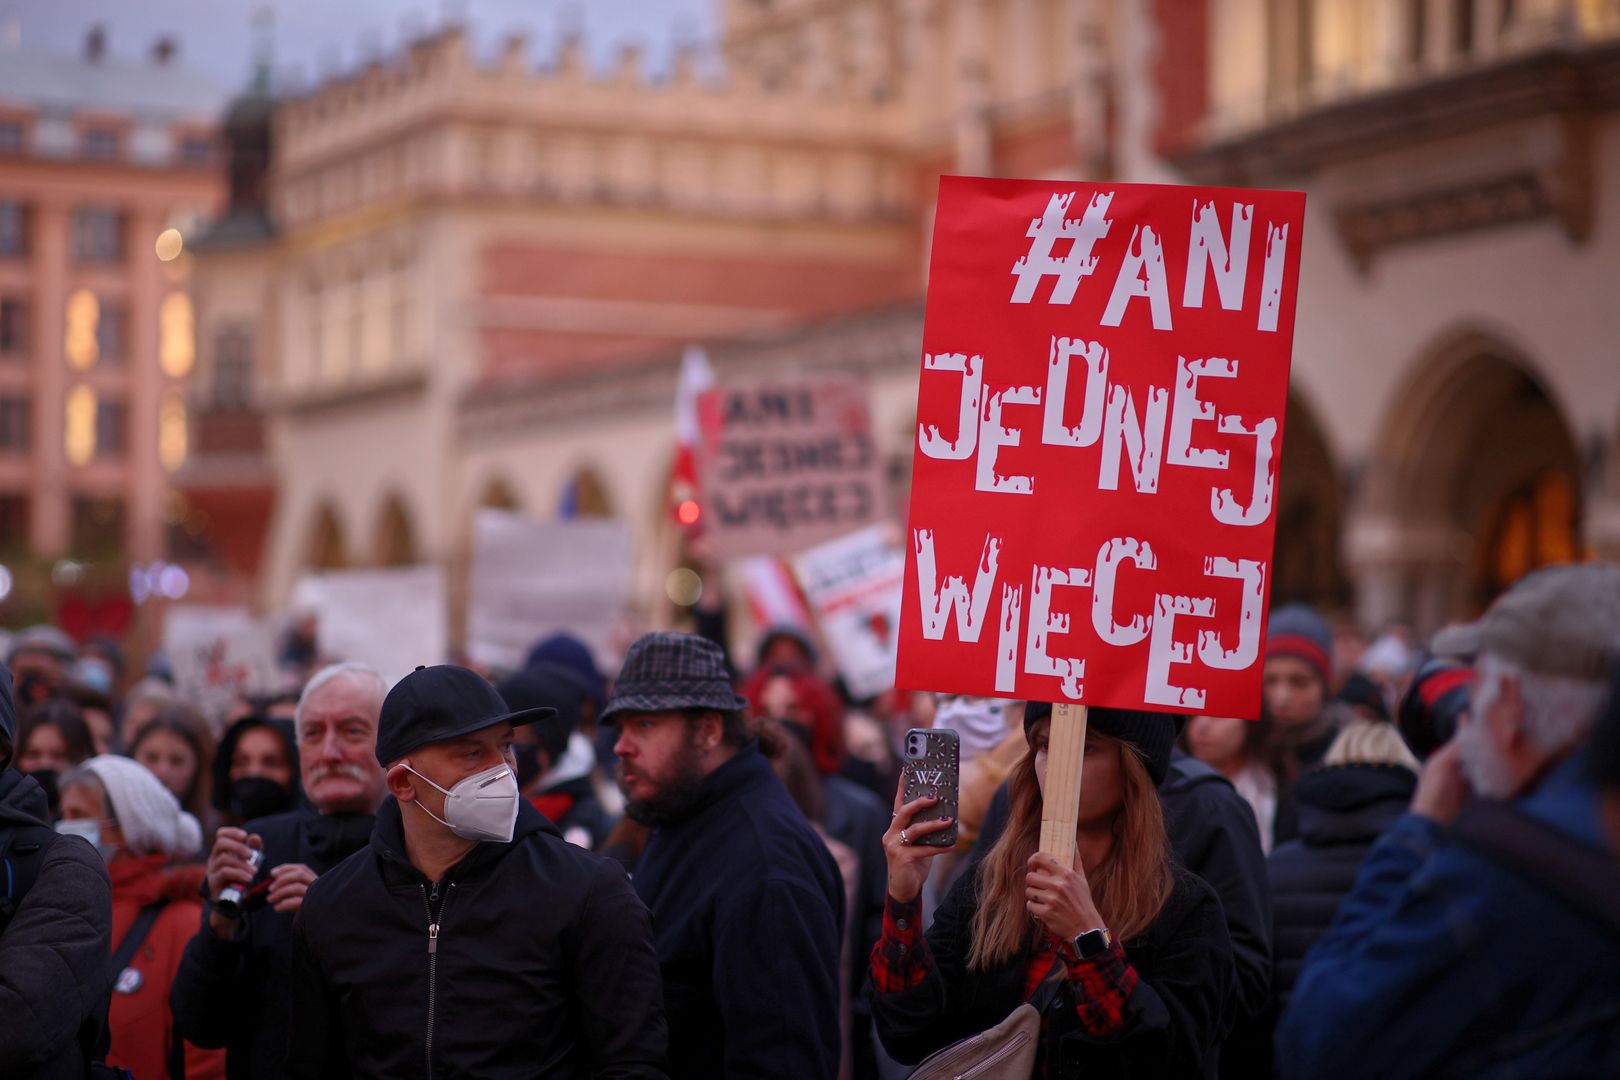 Polacy zabrali głos ws. aborcji. Rządzący nie będą zachwyceni [SONDAŻ]